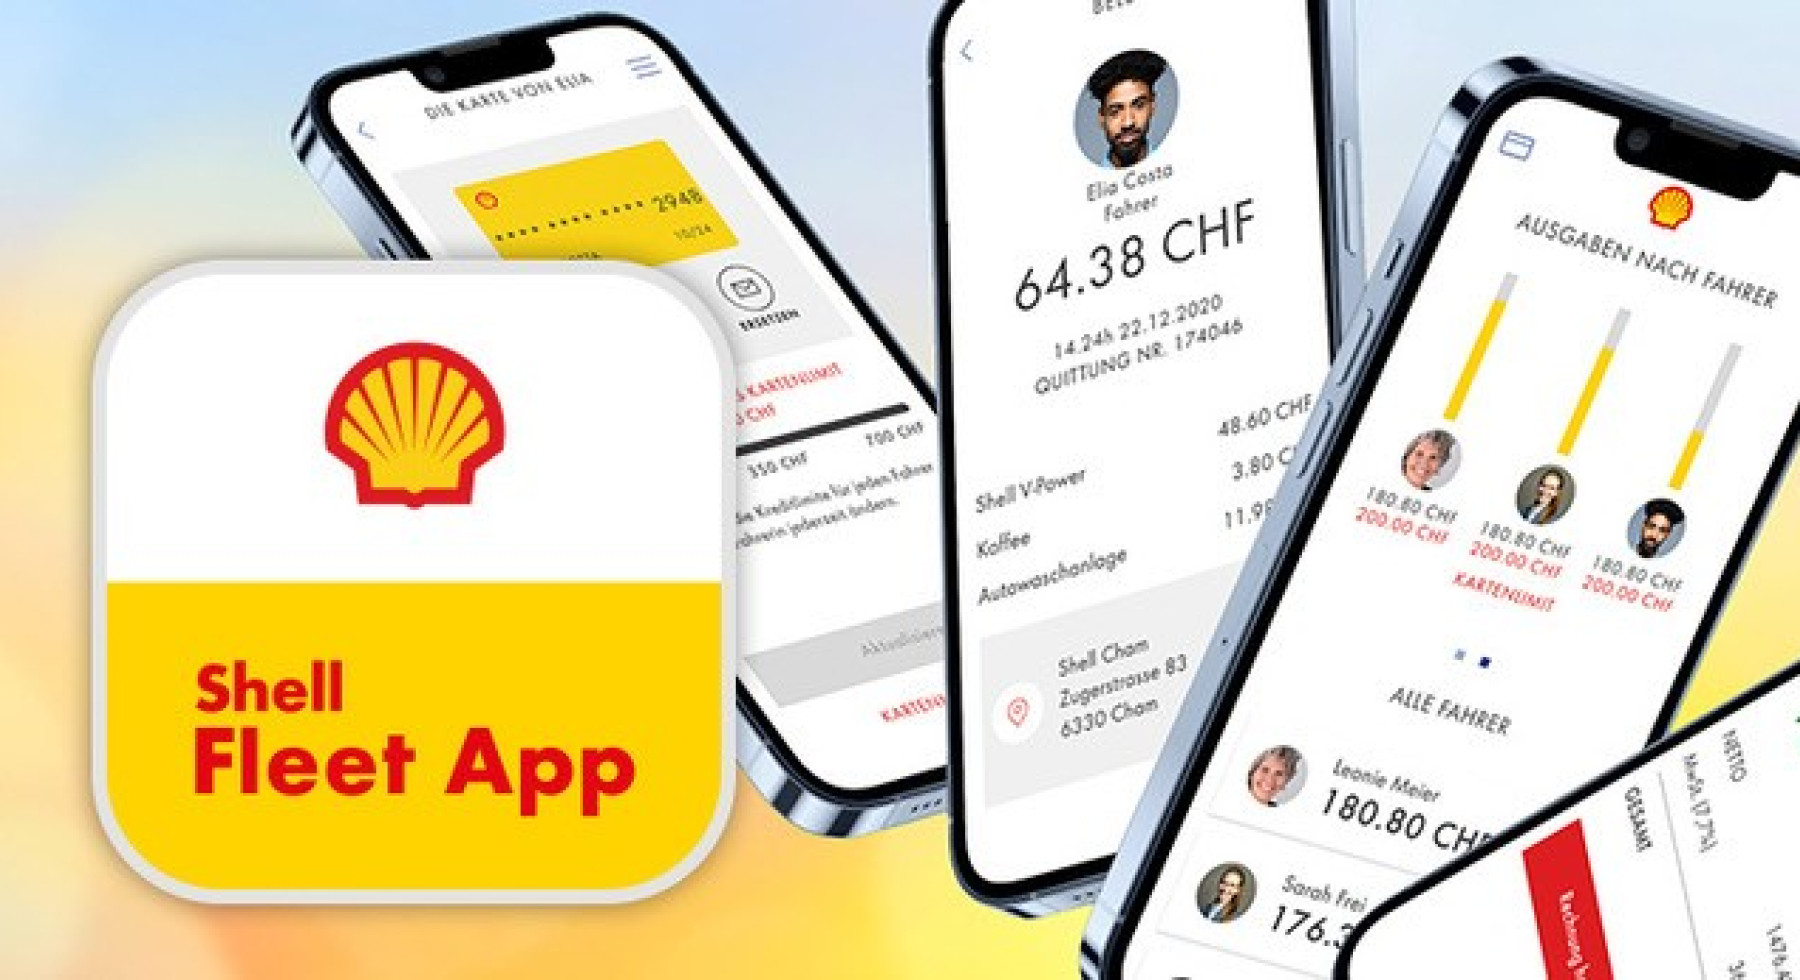 Das Shell Fleet App Mitarbeiterangebot